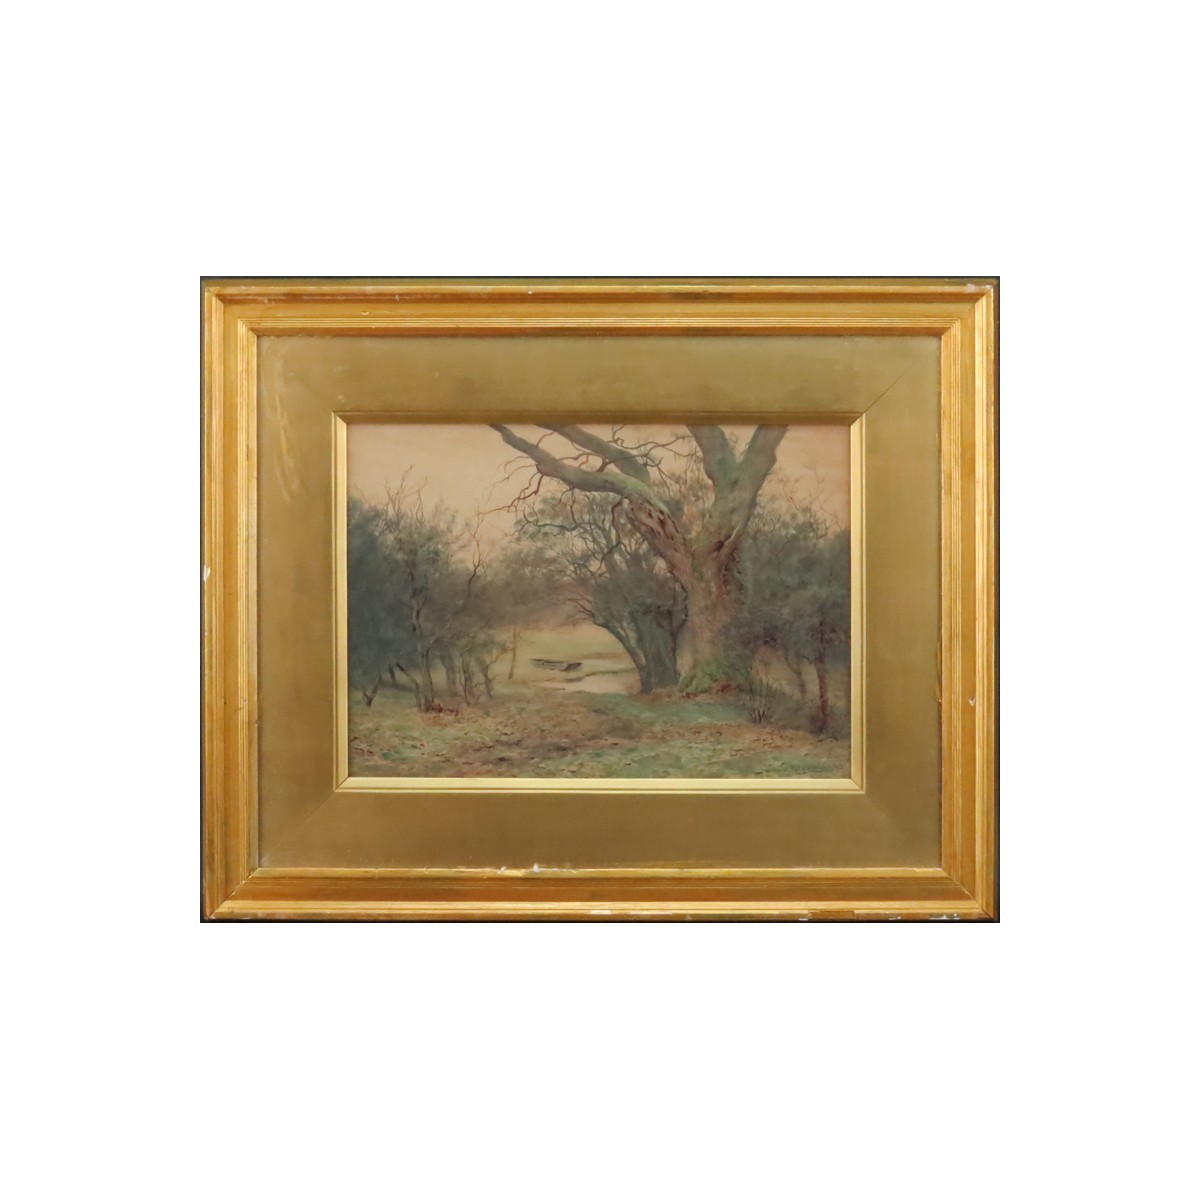 Wilmot Pilsbury, British (1840-1908) Watercolor